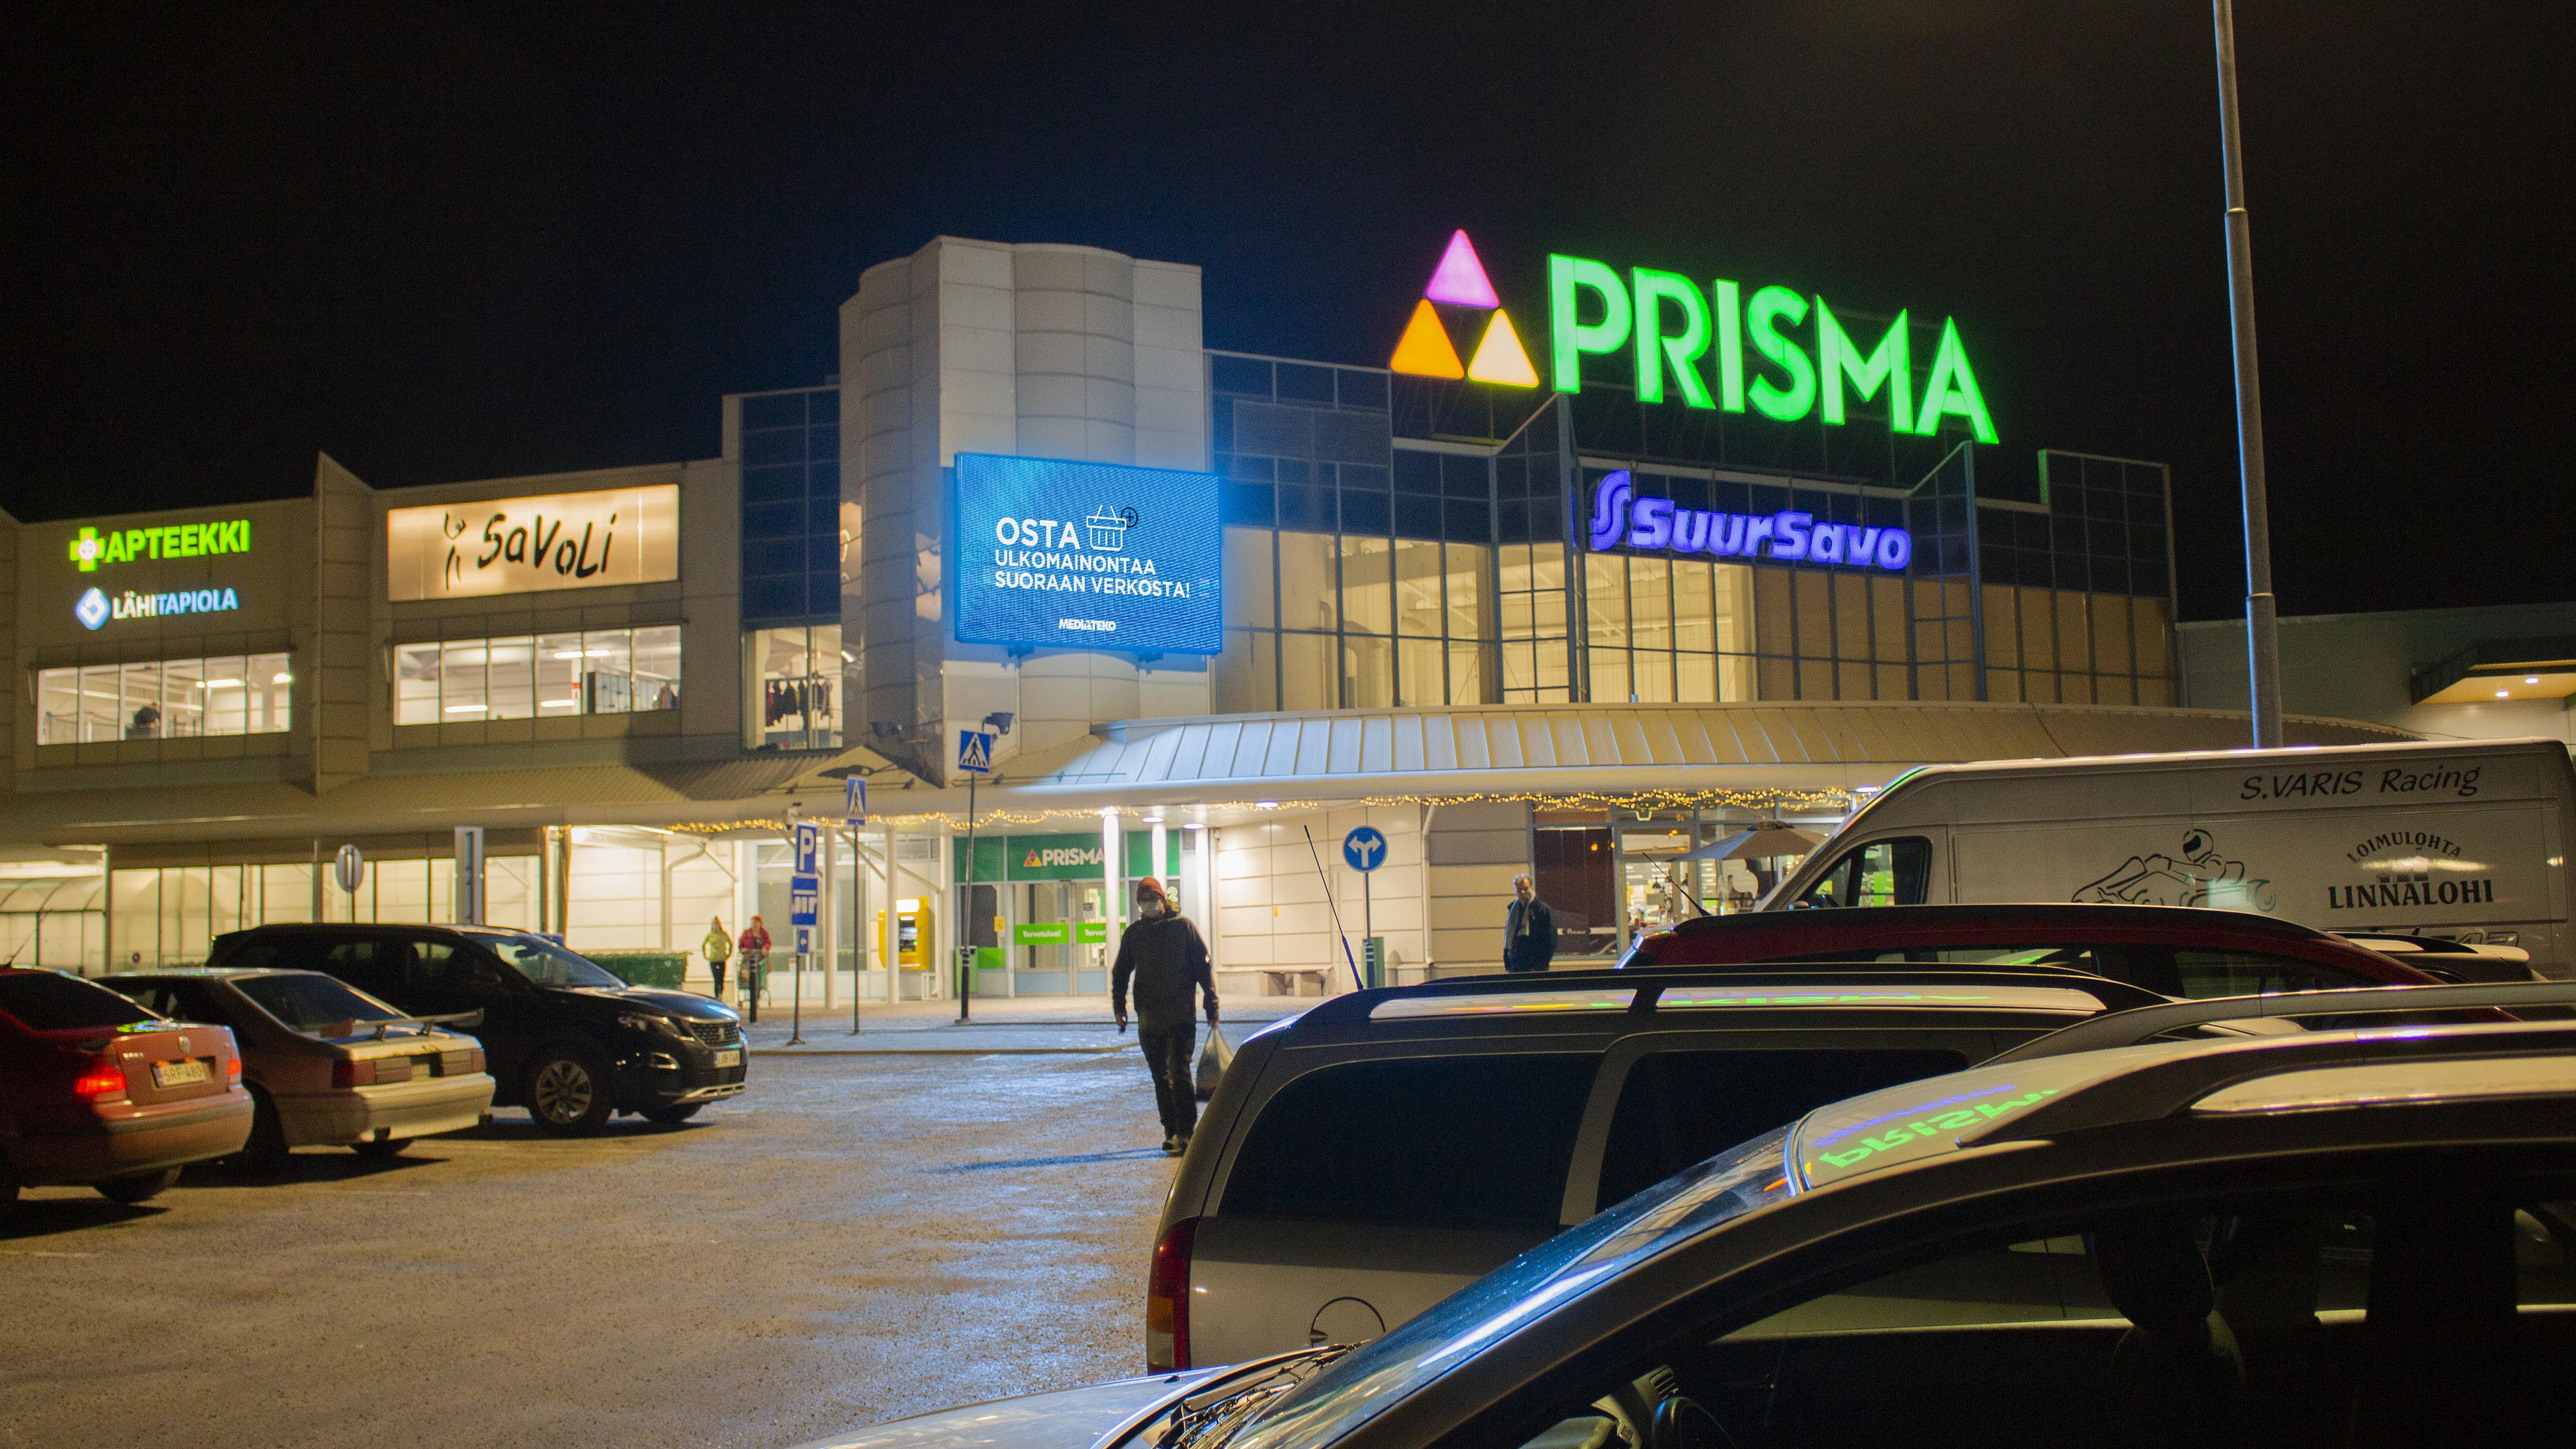 Prisma Savonlinna | 2 LED-suurtaulua 1